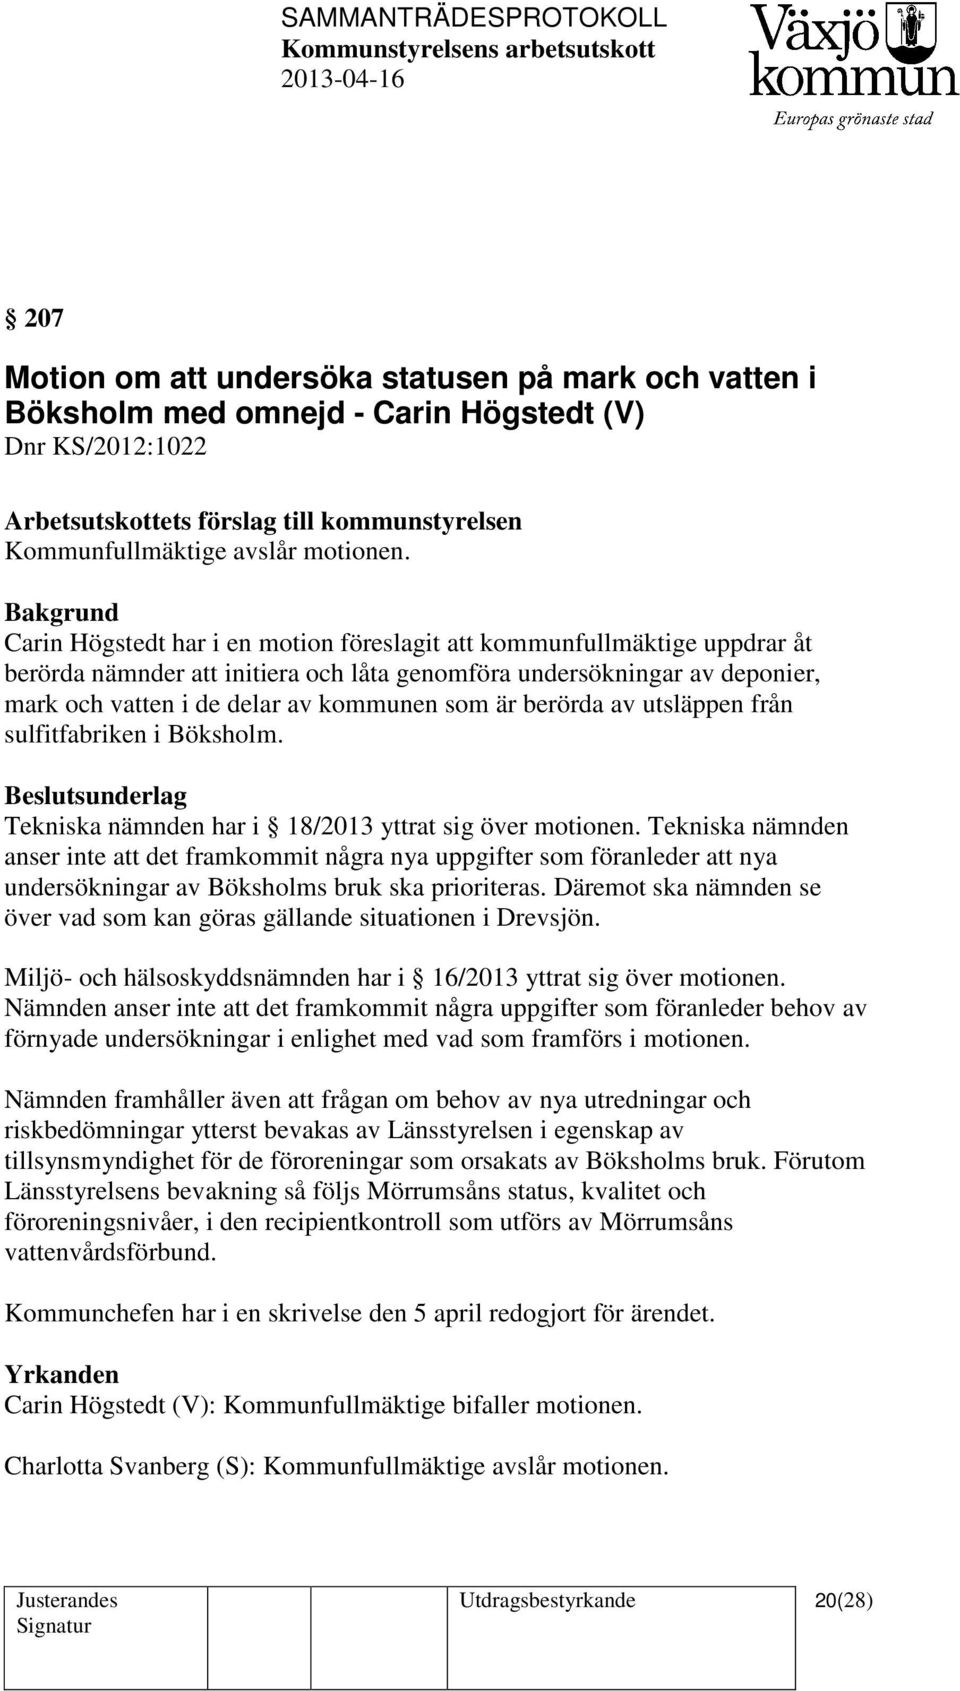 berörda av utsläppen från sulfitfabriken i Böksholm. Beslutsunderlag Tekniska nämnden har i 18/2013 yttrat sig över motionen.